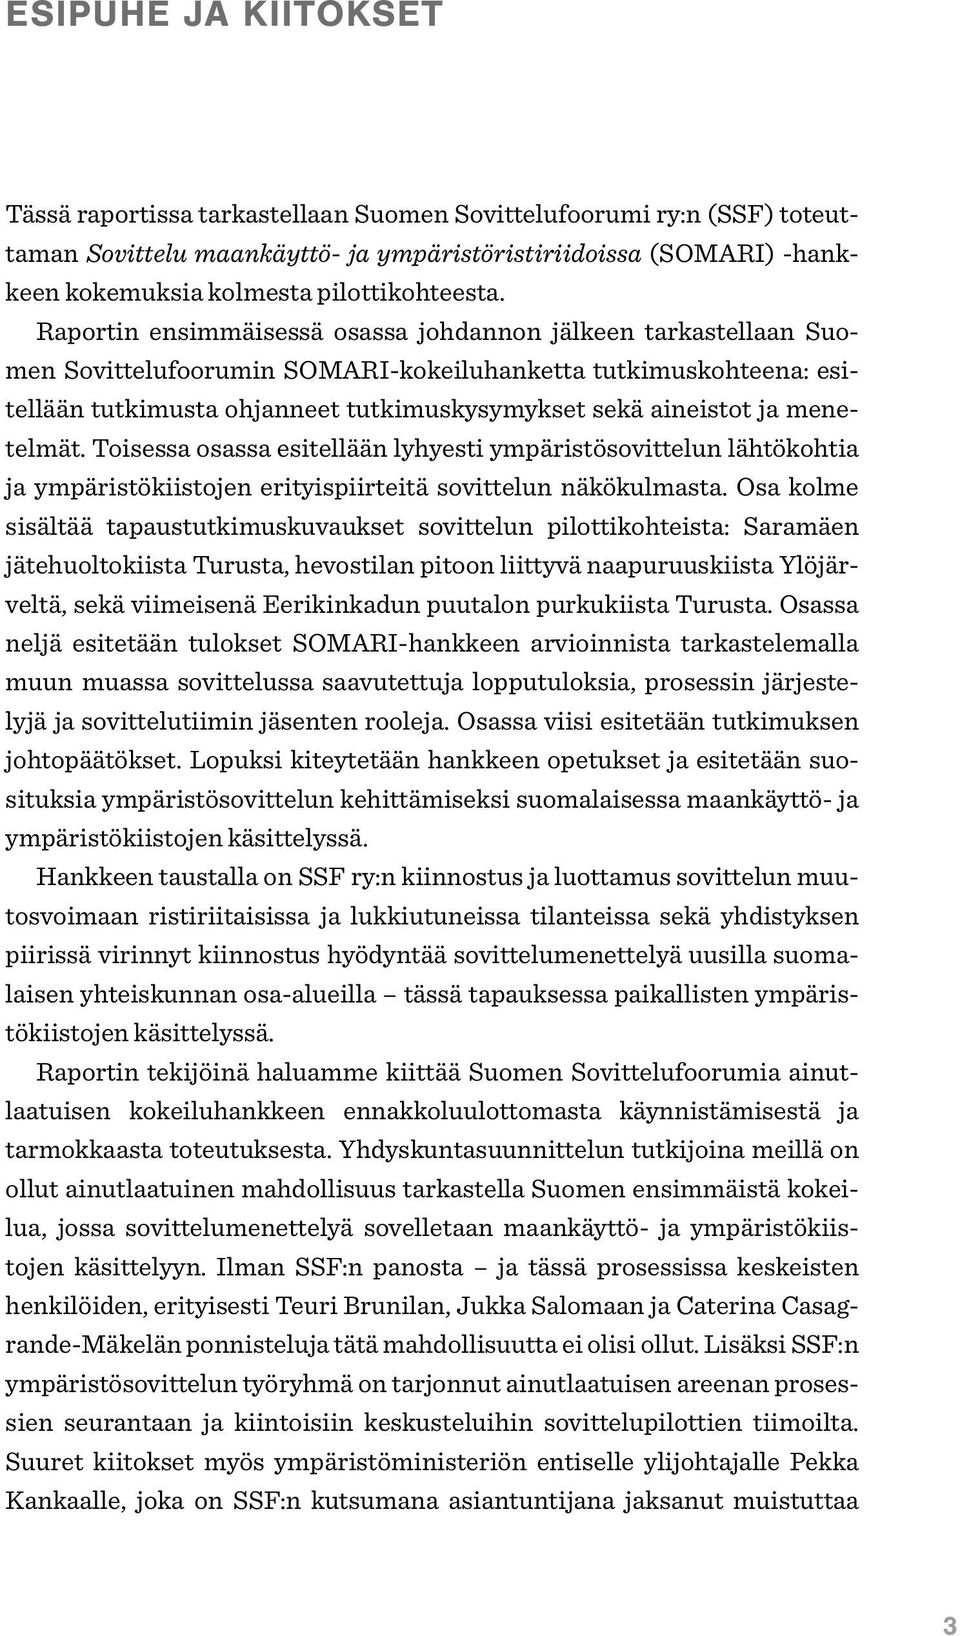 Raportin ensimmäisessä osassa johdannon jälkeen tarkastellaan Suomen Sovittelufoorumin SOMARI-kokeiluhanketta tutkimuskohteena: esitellään tutkimusta ohjanneet tutkimuskysymykset sekä aineistot ja